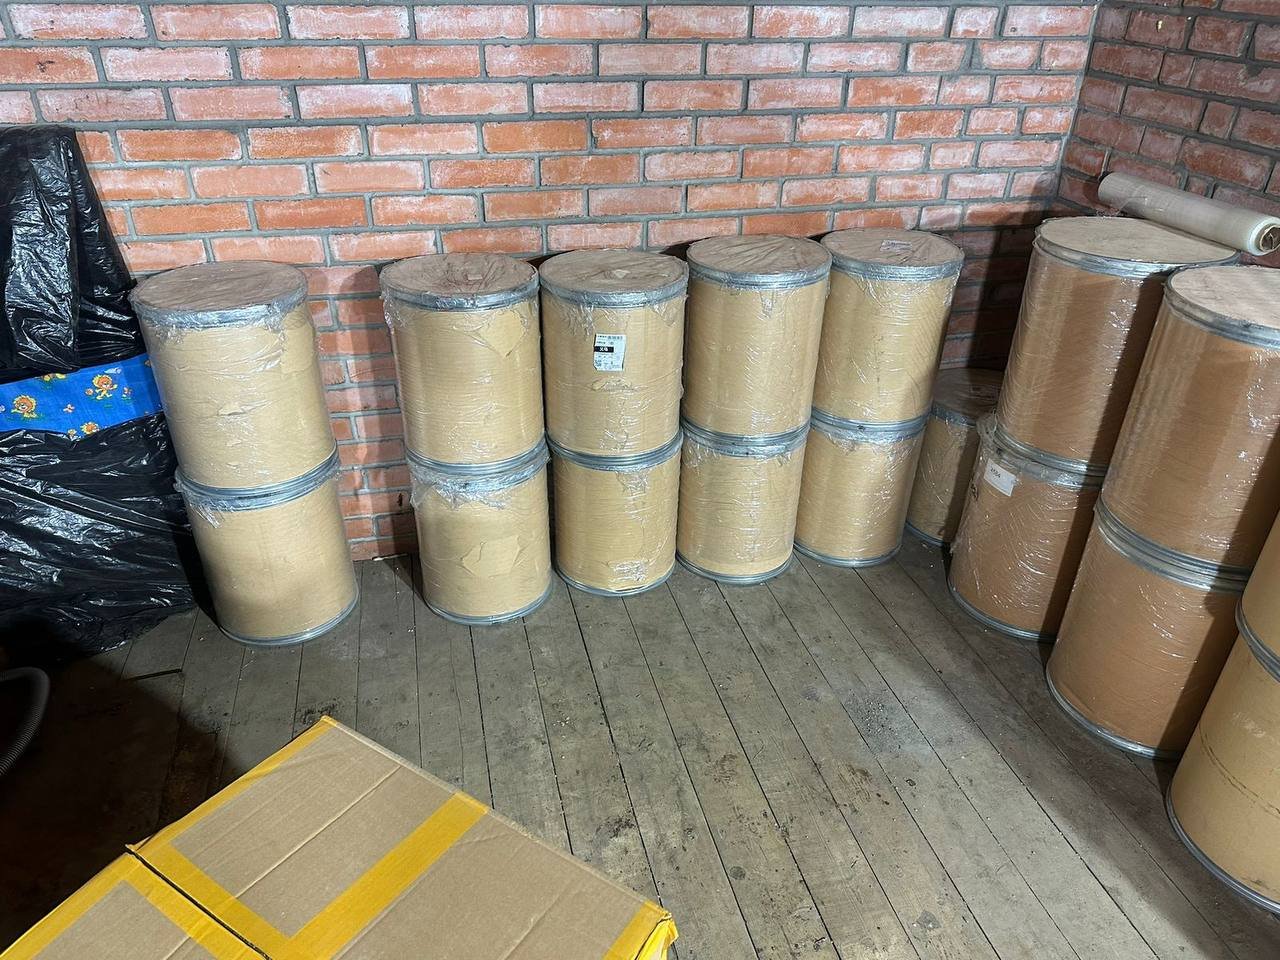 В Москве сотрудники ФТС задержали получателя 300 кг прекурсоров для синтеза наркотиков